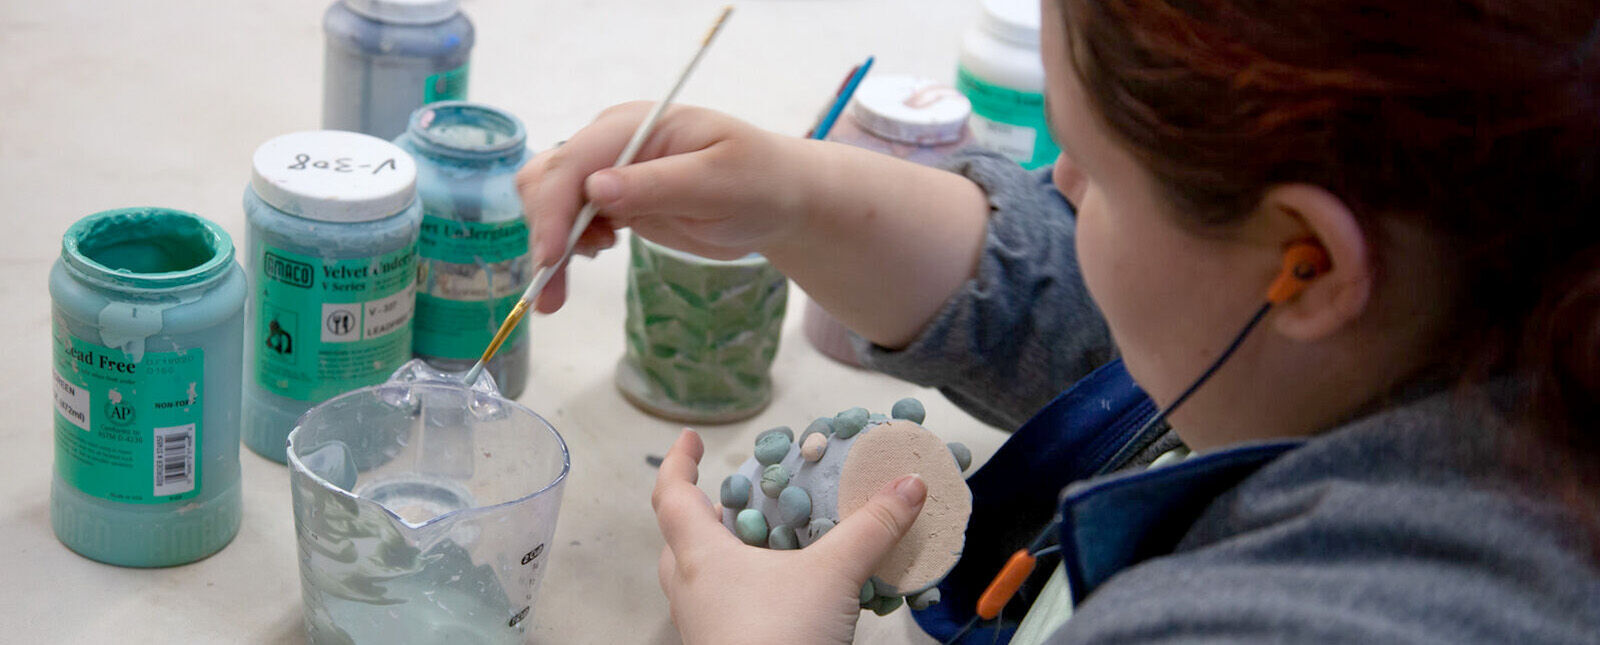 A female student paints a ceramic piece